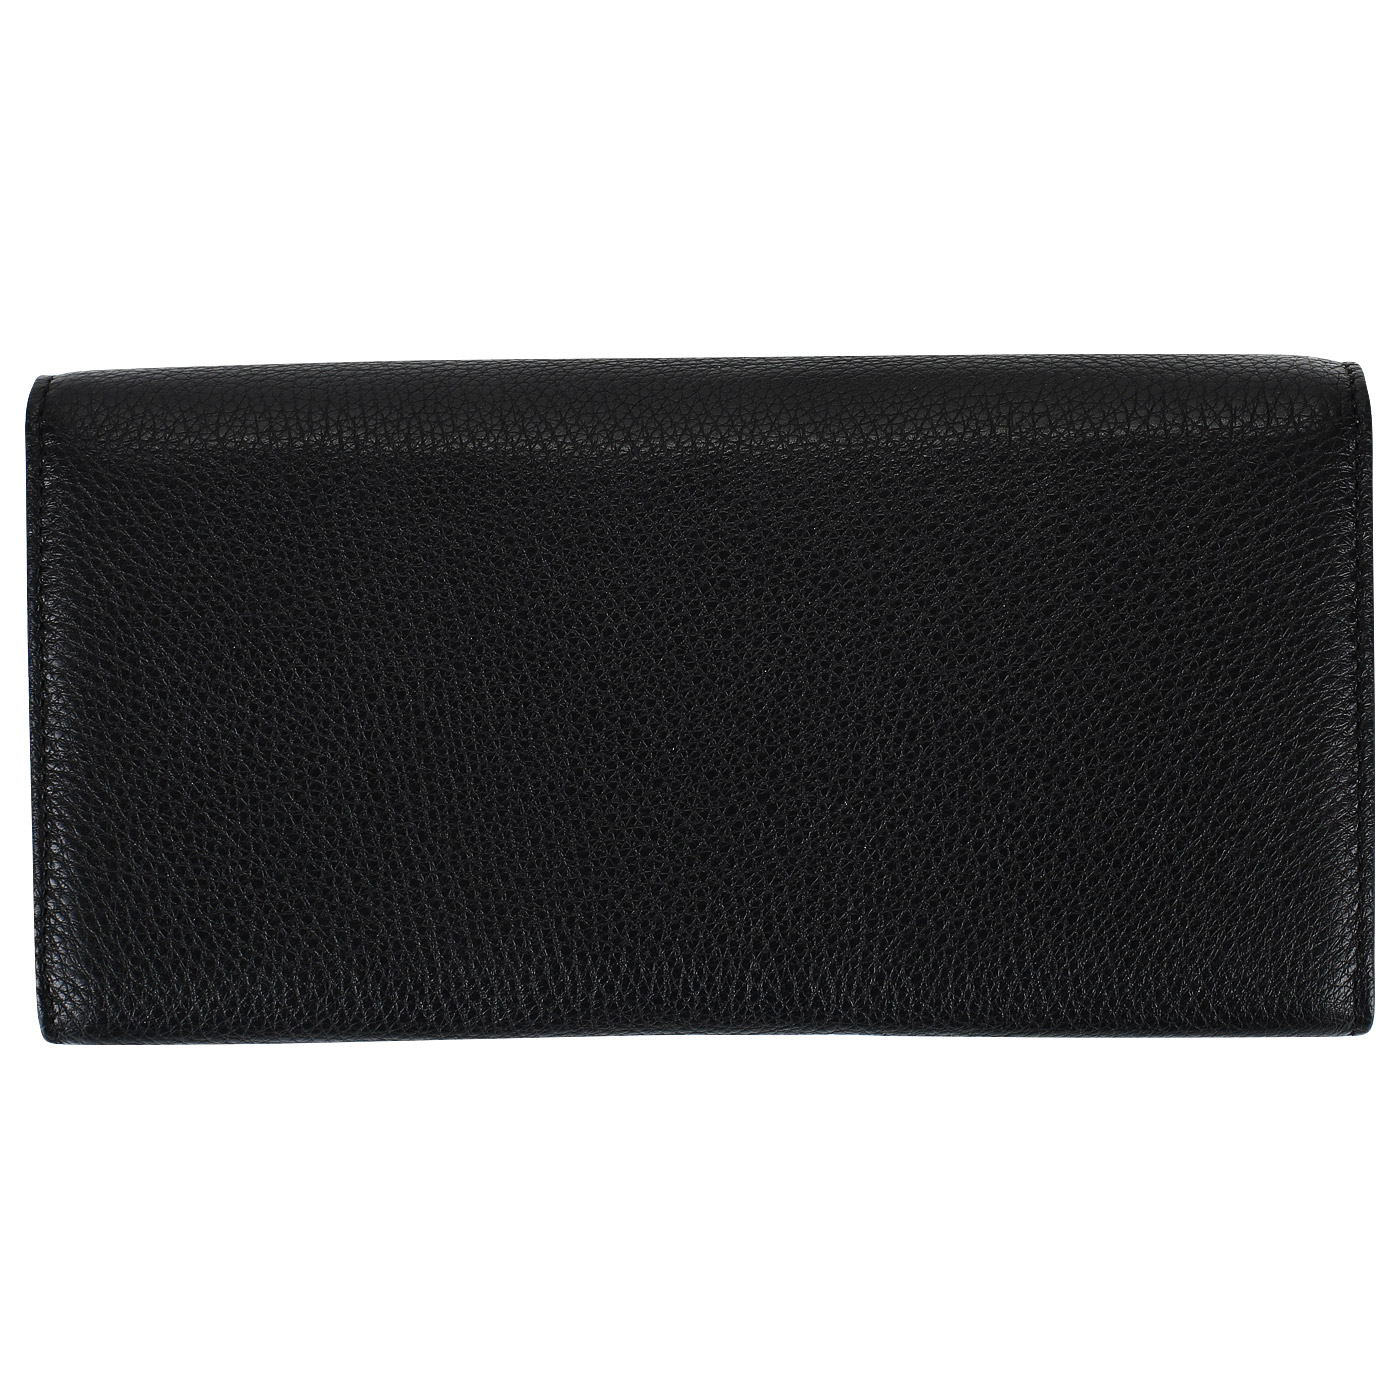 Черное кожаное портмоне на полную купюру Coccinelle Metallic Soft